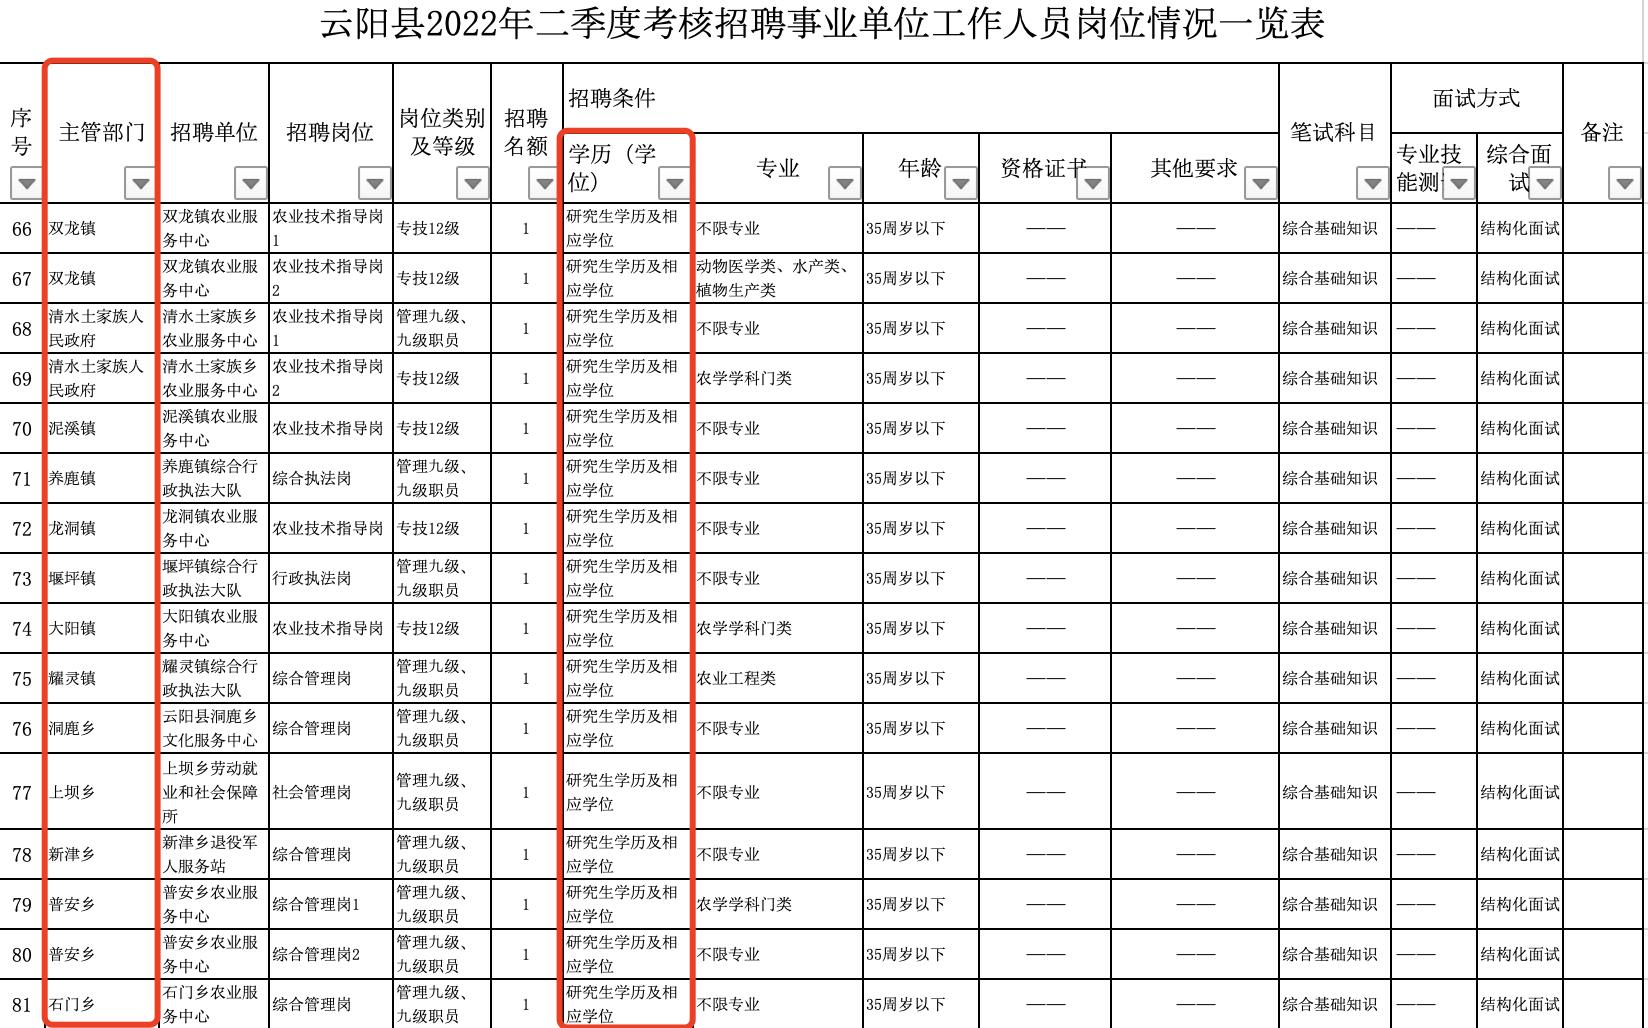 《云阳县2022年二季度考核招聘事业单位工作人员岗位情况一览表》显示，多个镇和乡的岗位要求研究生学历。